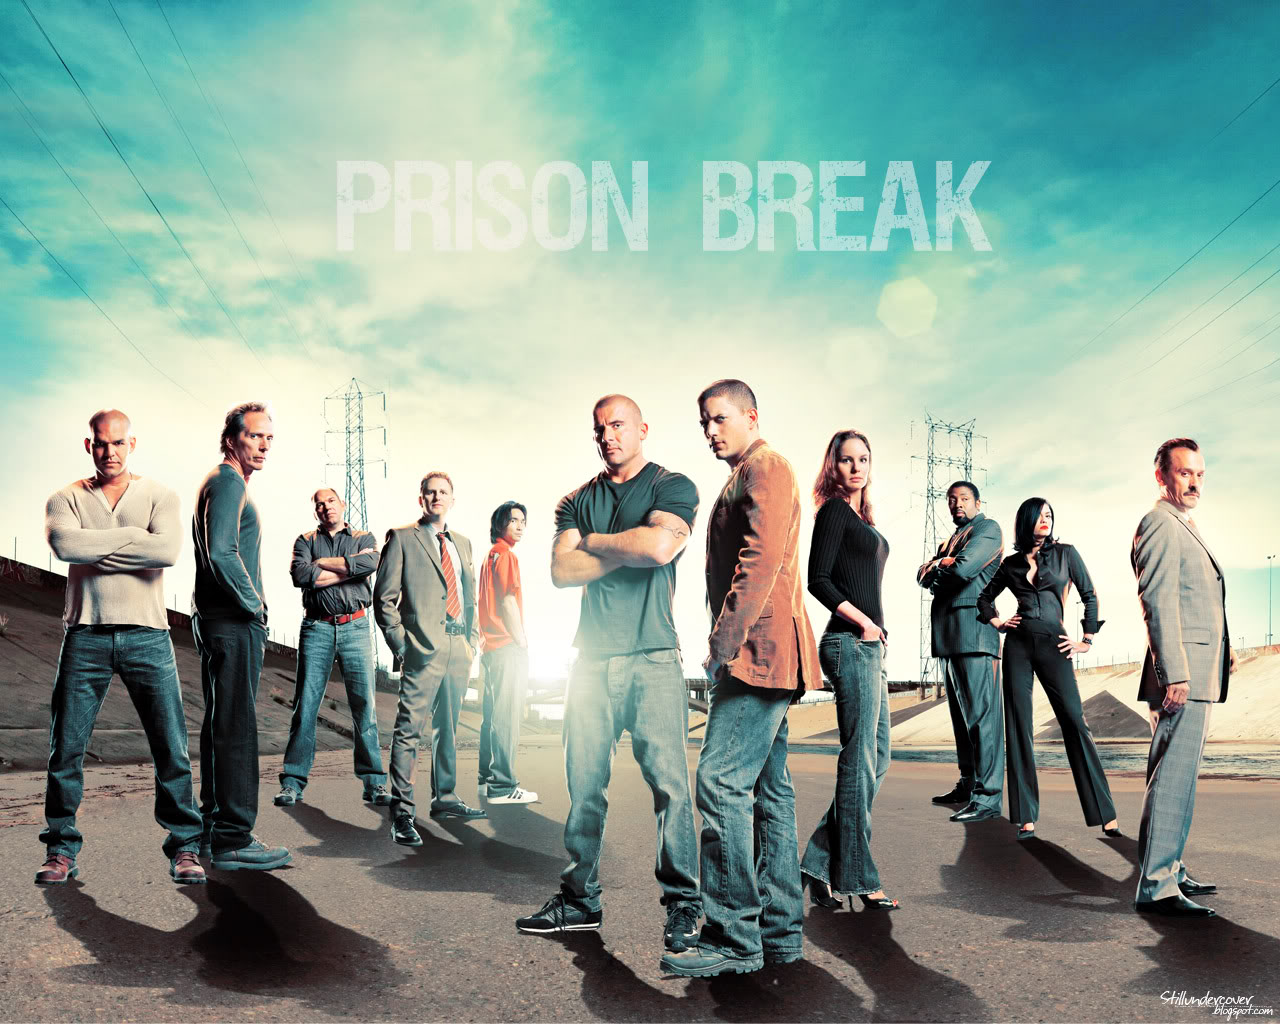 Ny sæson af Prison Break